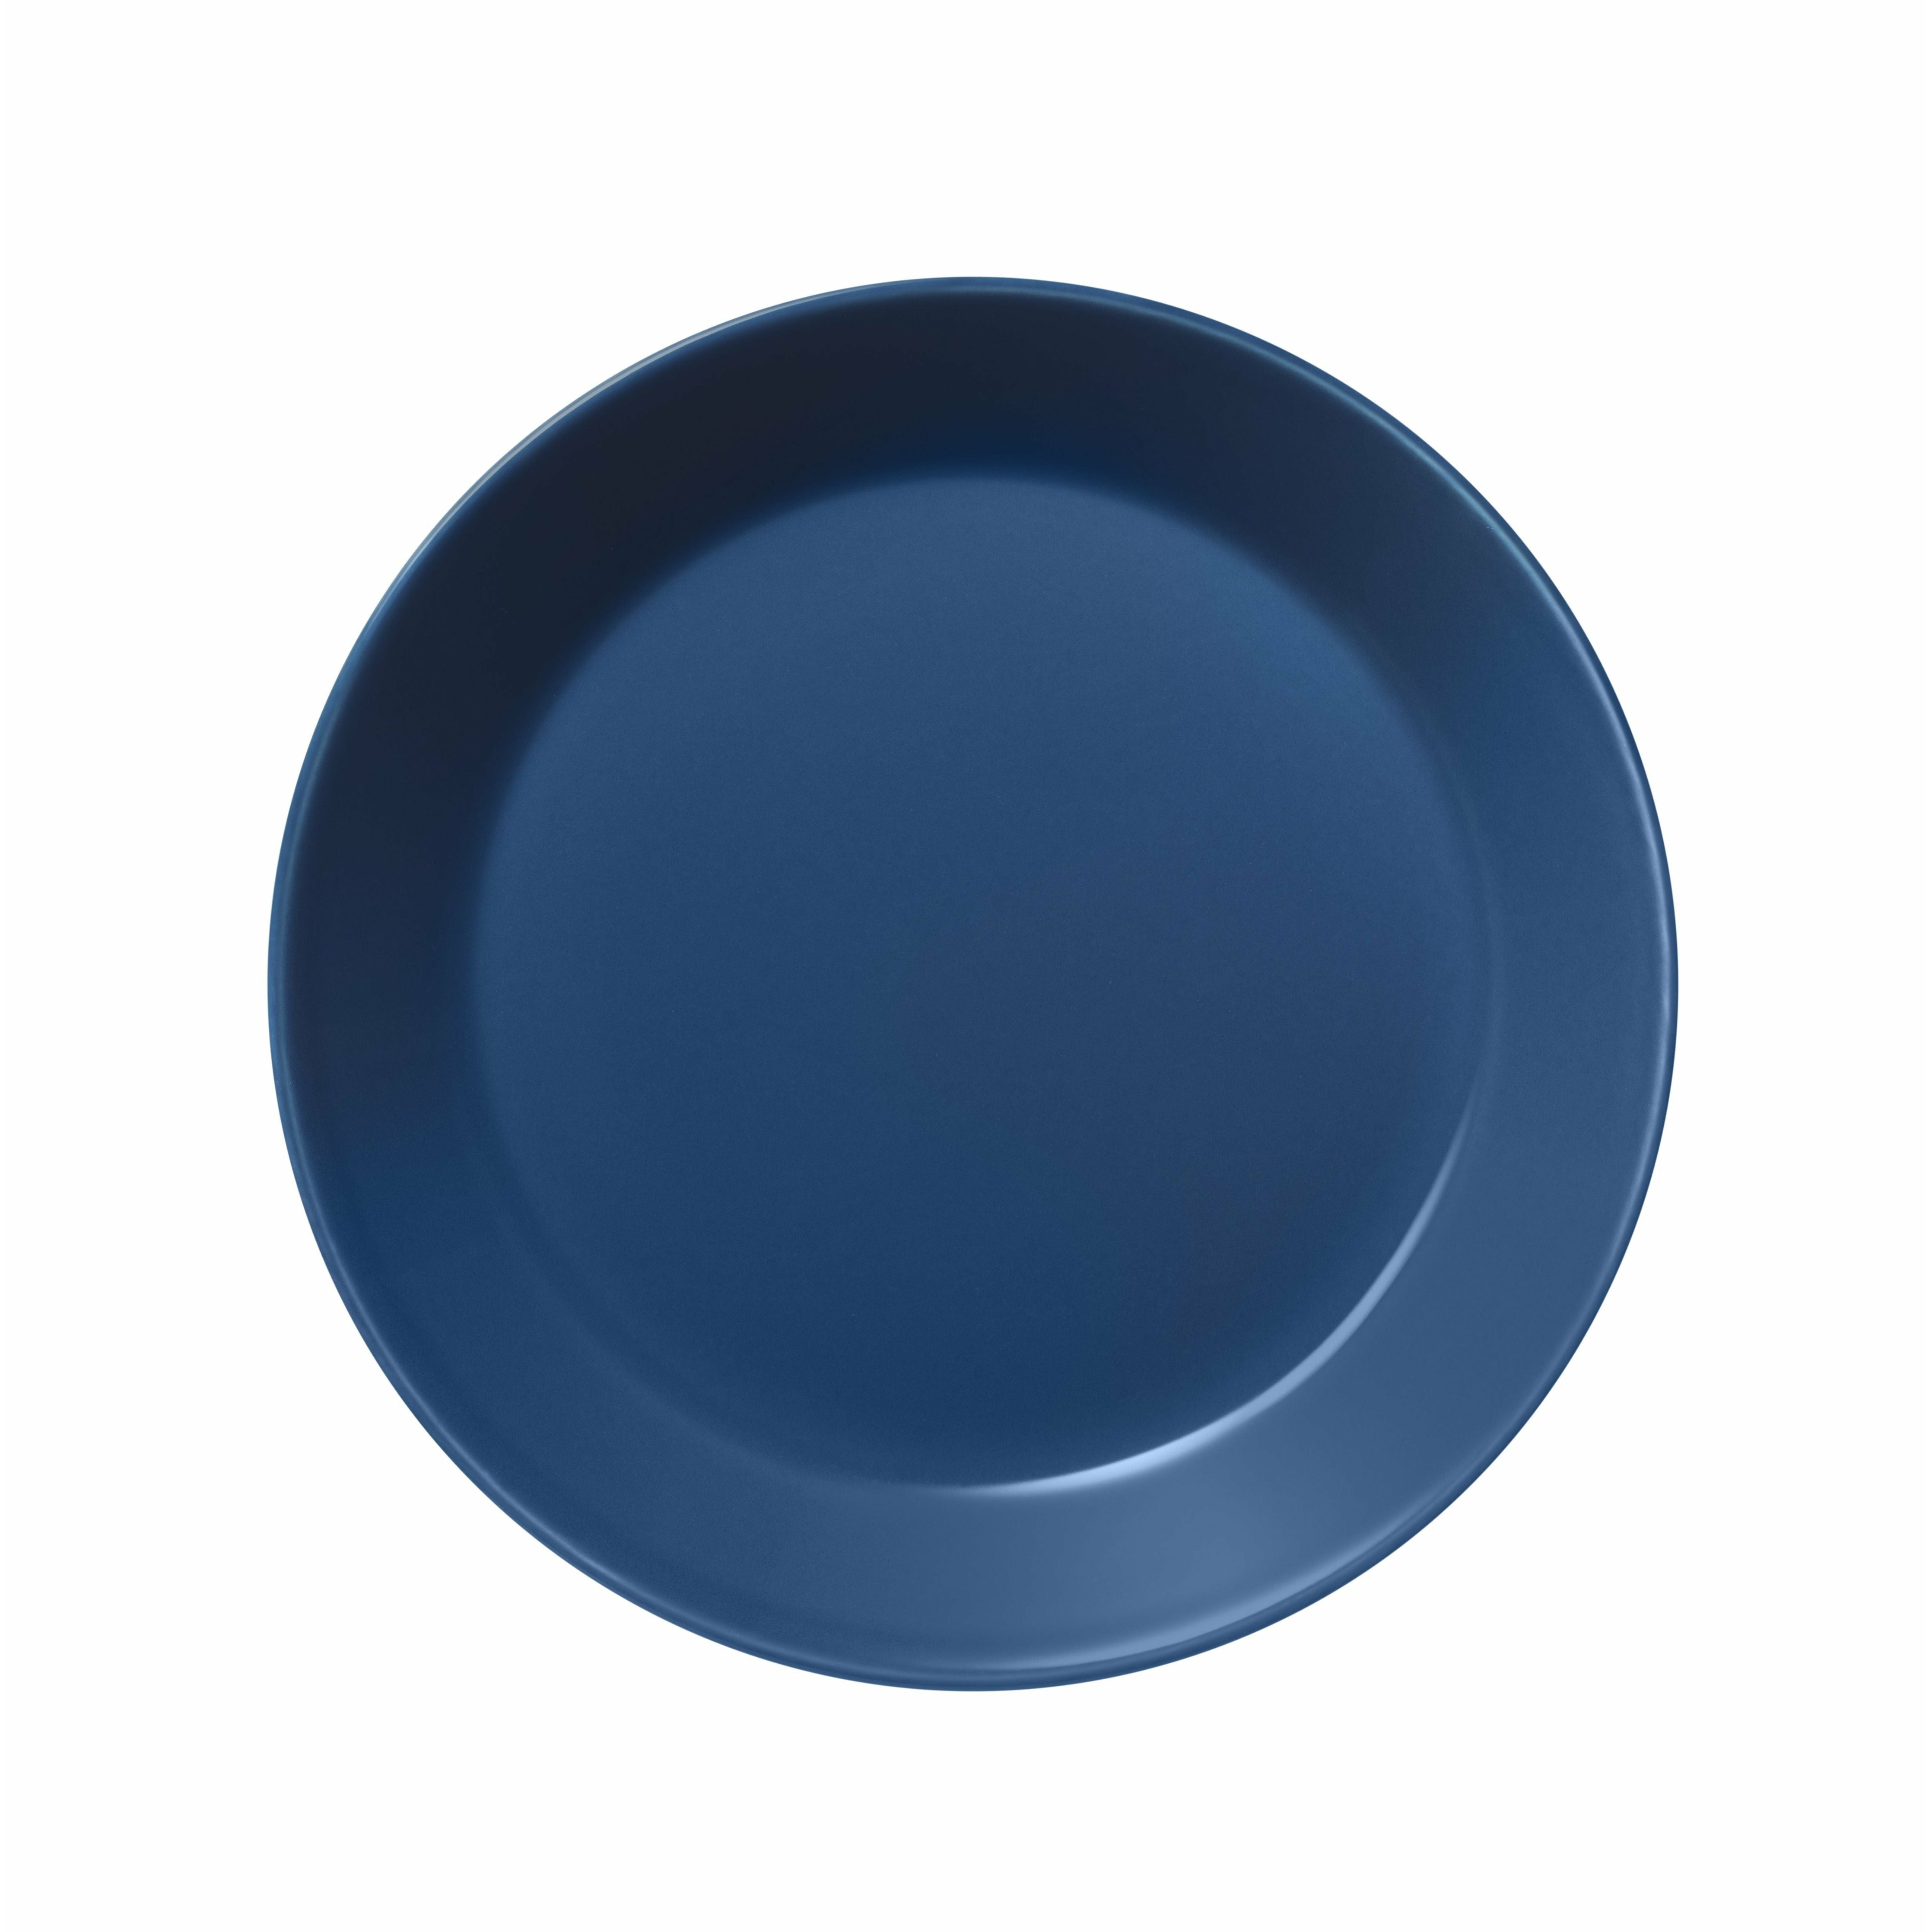 Iittala Teema Plate 17cm, Vintage Blue